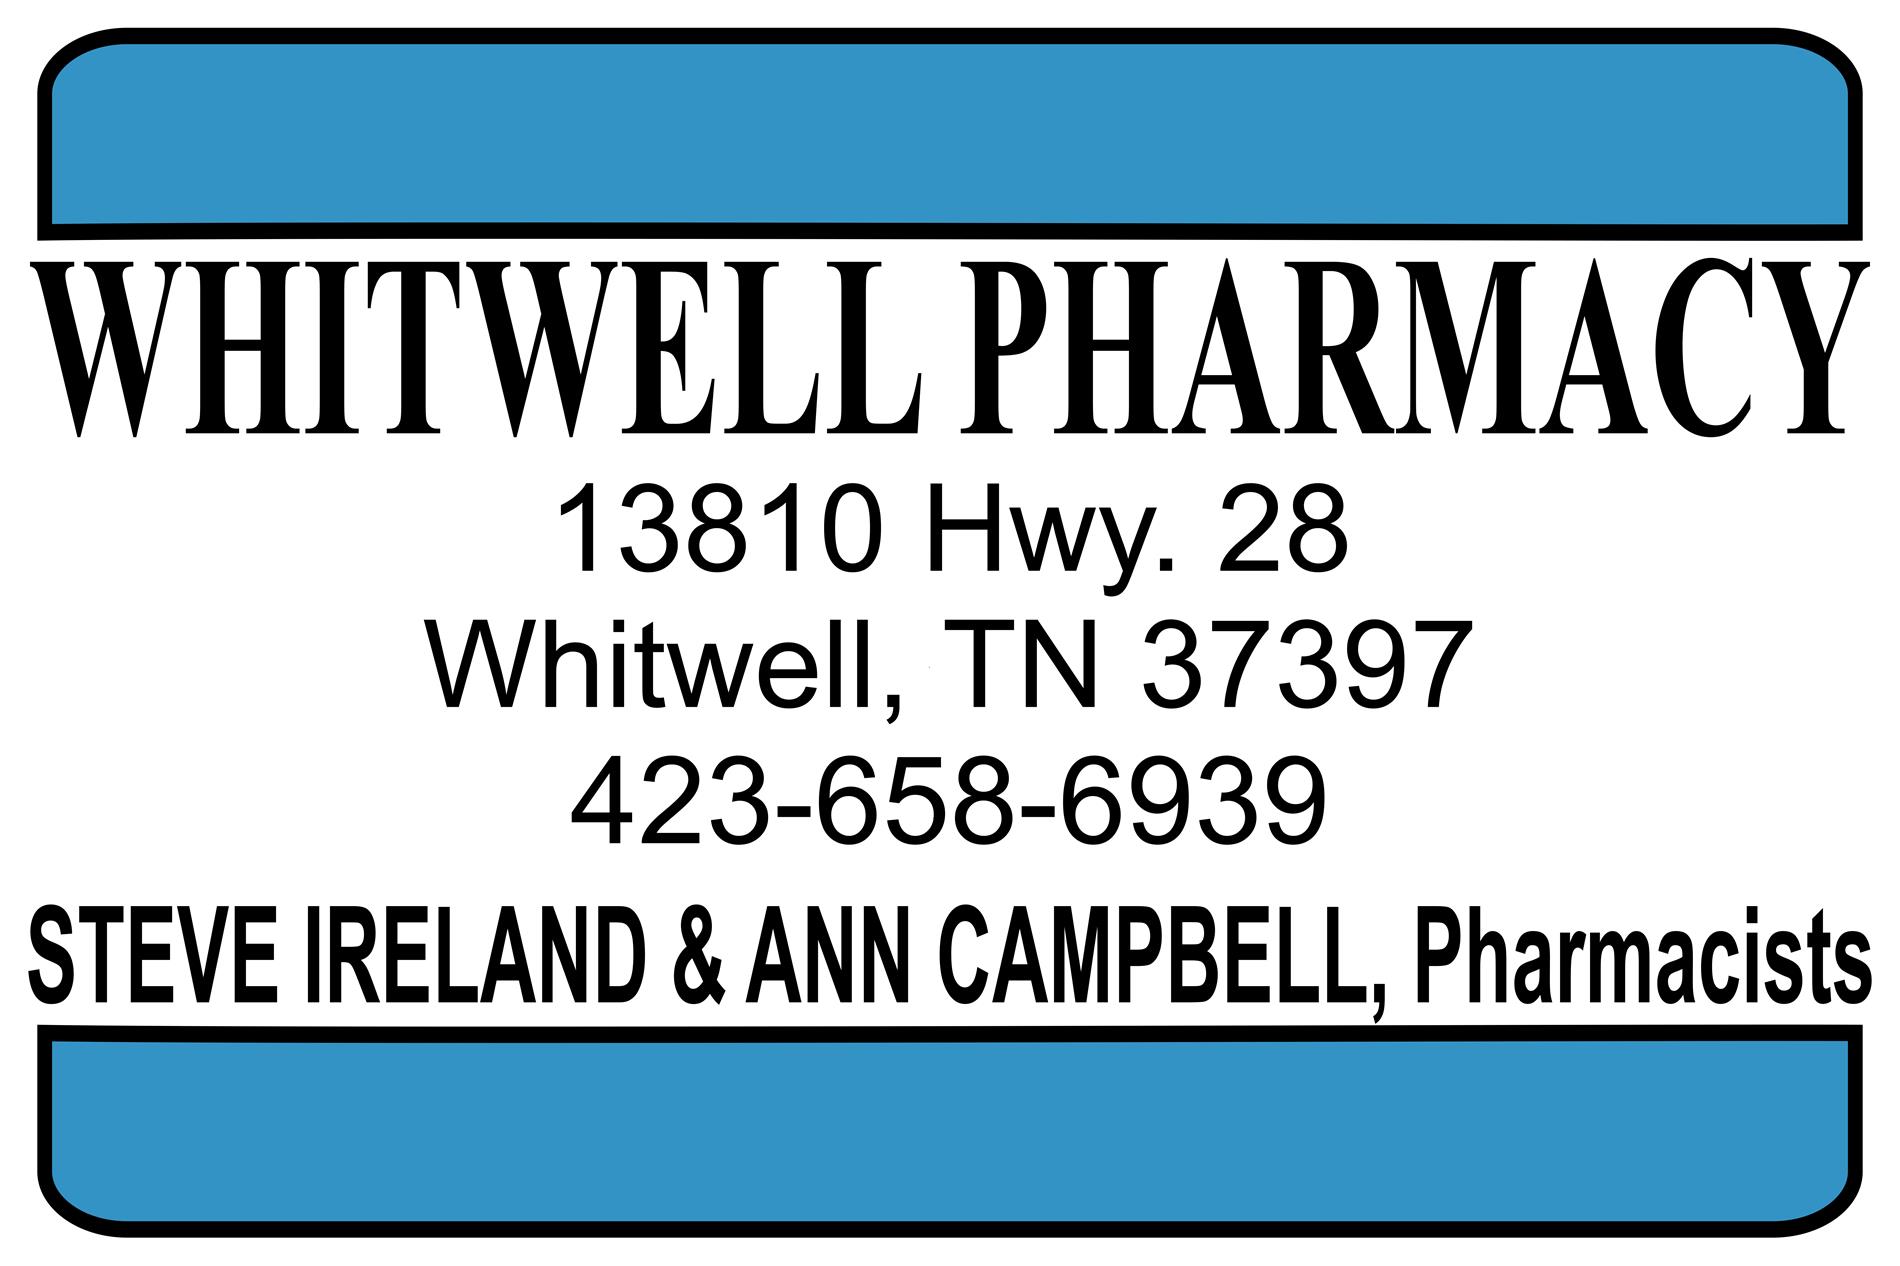 Whitwell Pharmacy